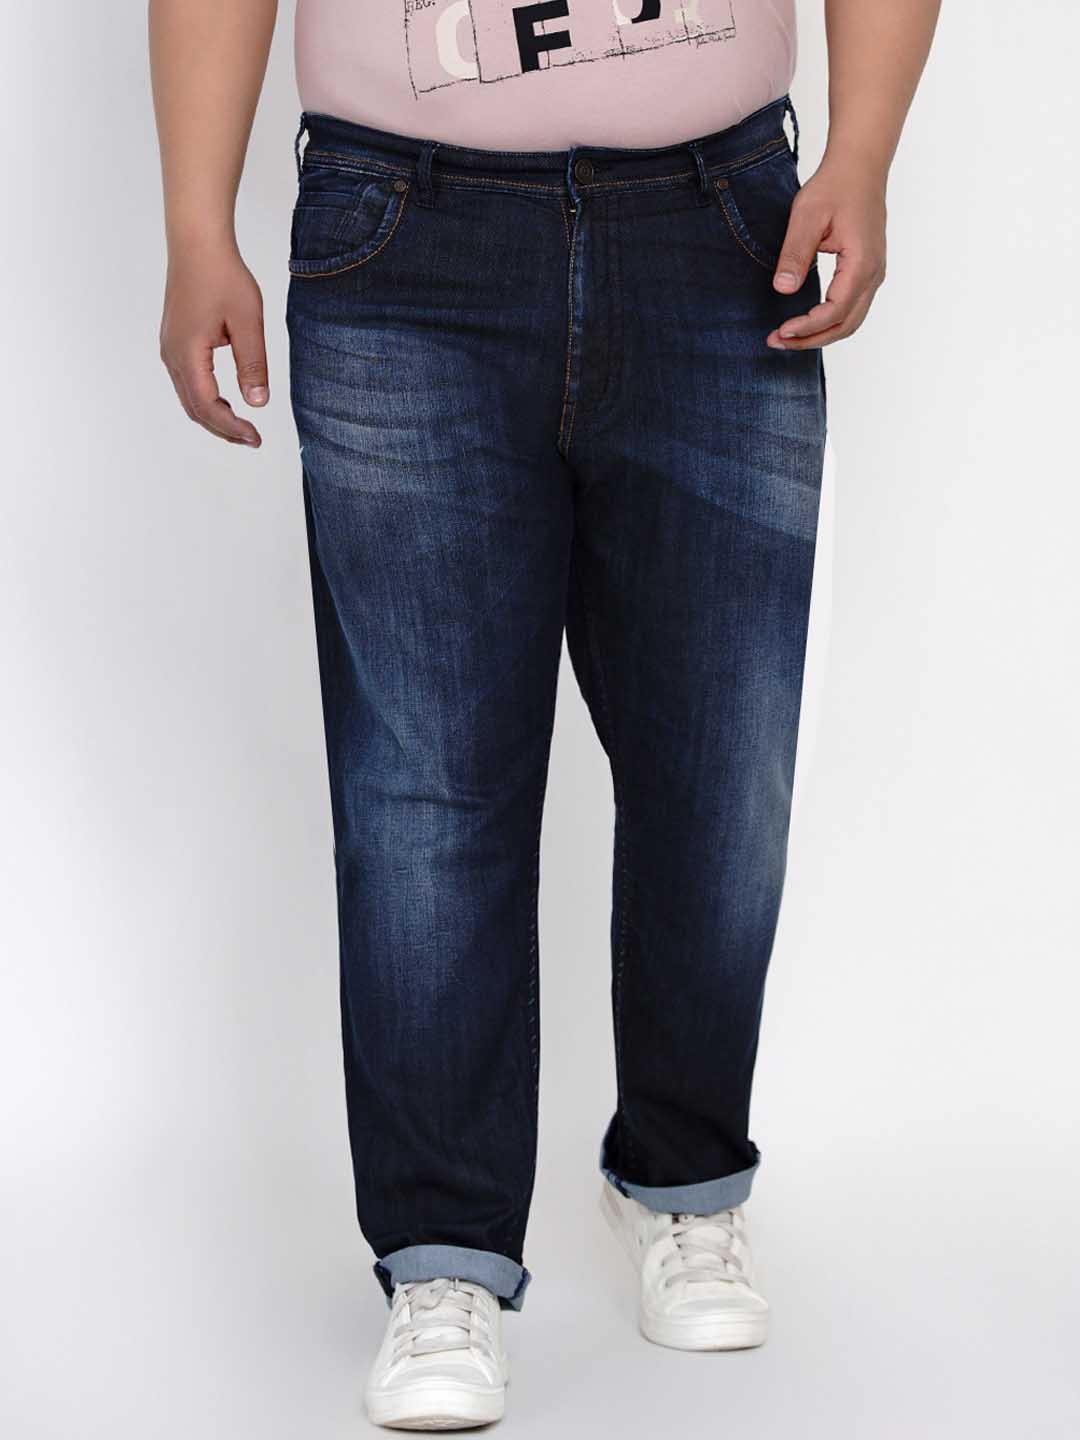 affordables/jeans/JPJ2556/jpj2556-3.jpg